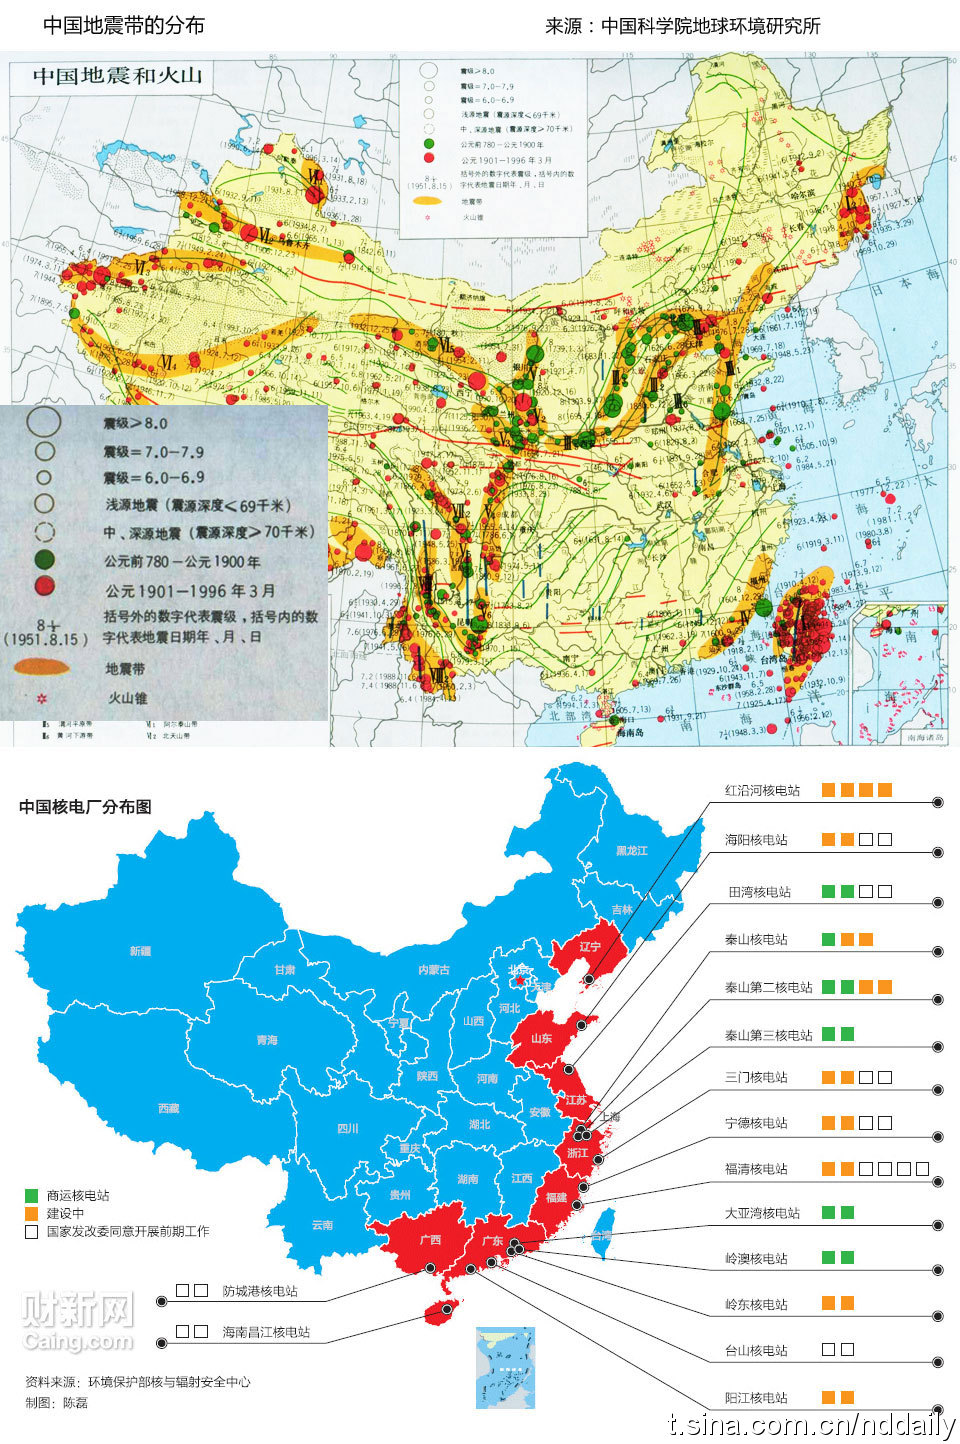 中国核电站分布图与地震带分布对照 - 左岸博客